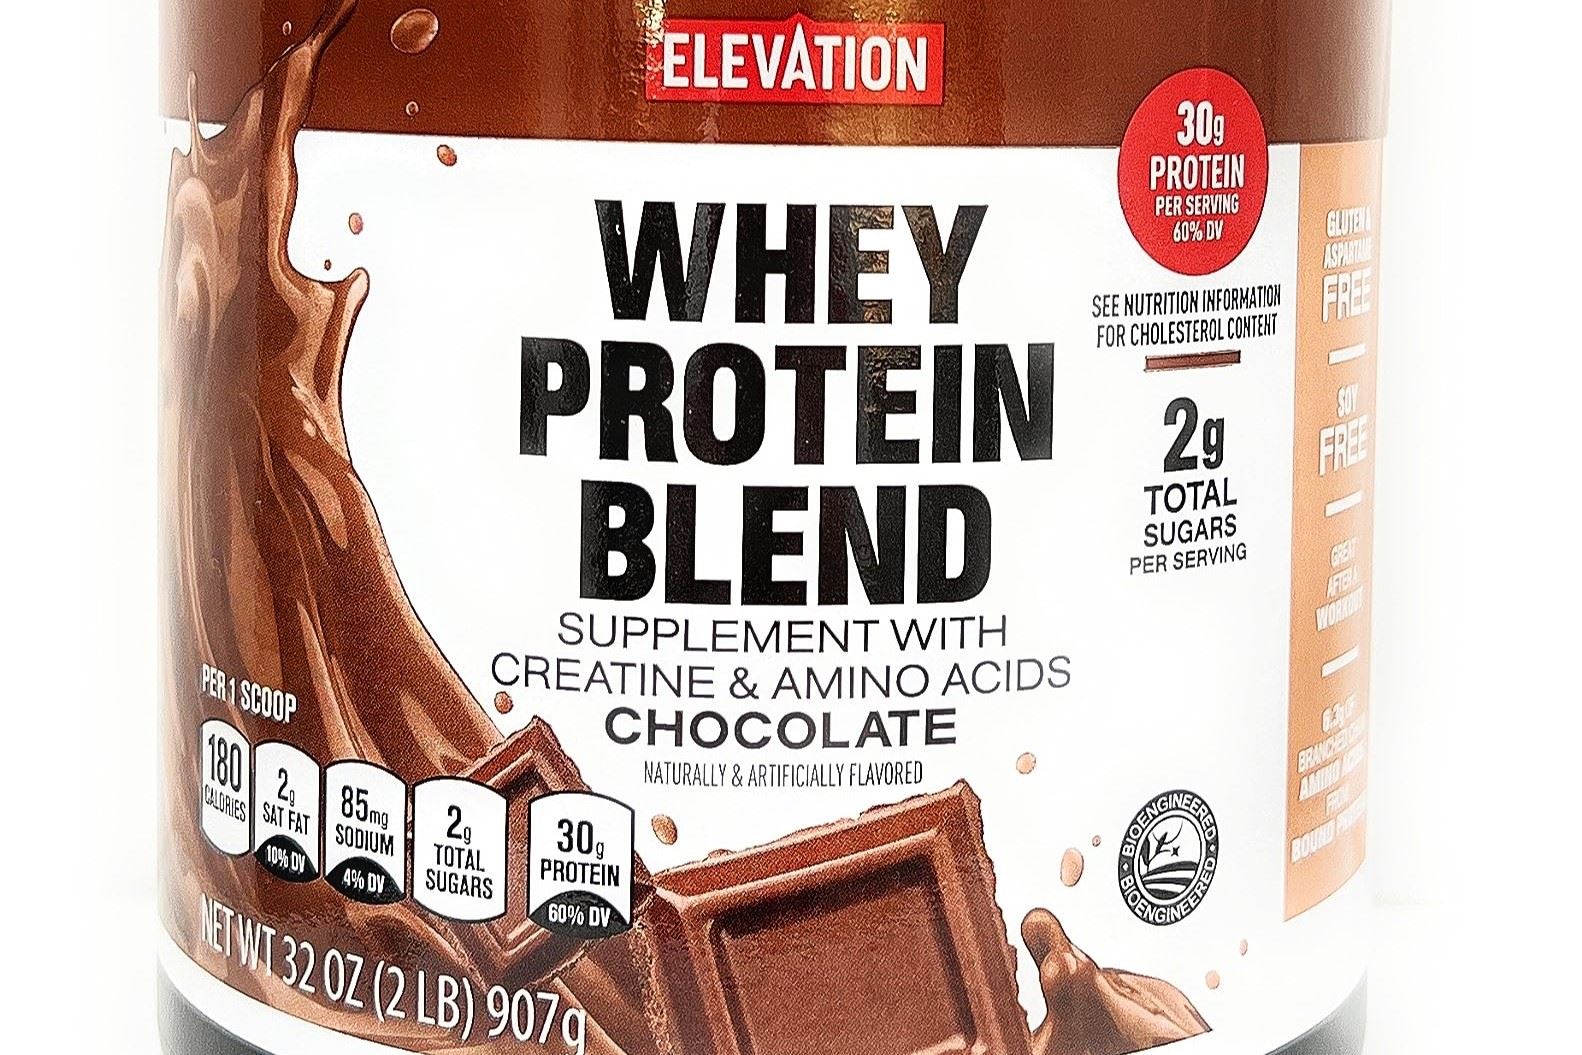 20-aldi-elevation-protein-powder-nutrition-facts